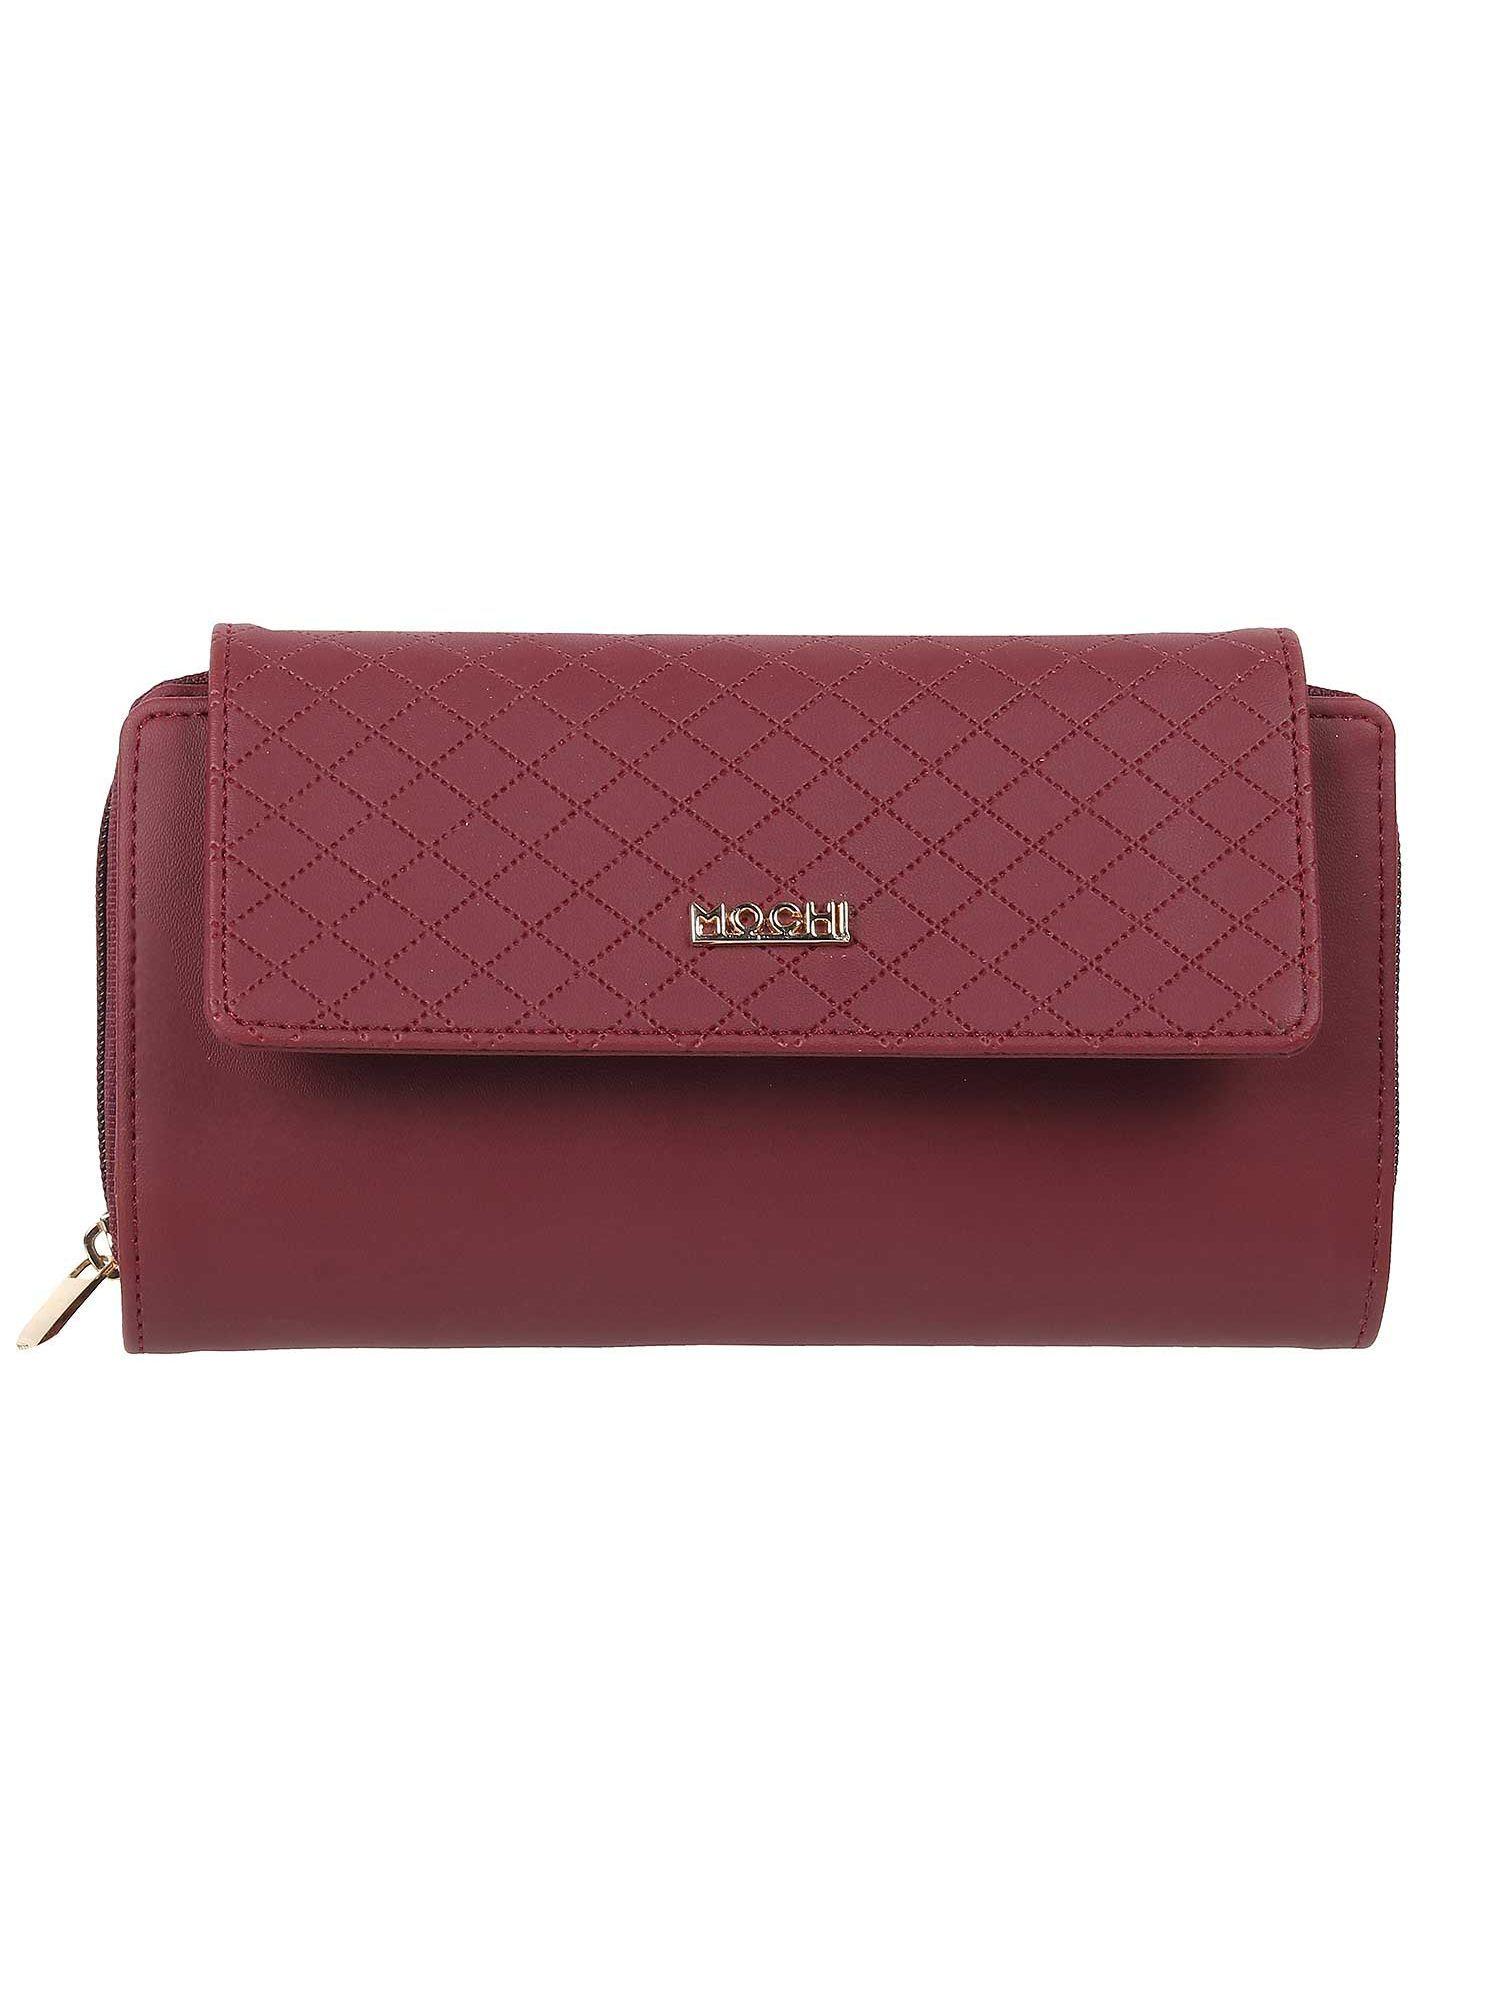 maroon wallet for women (s)